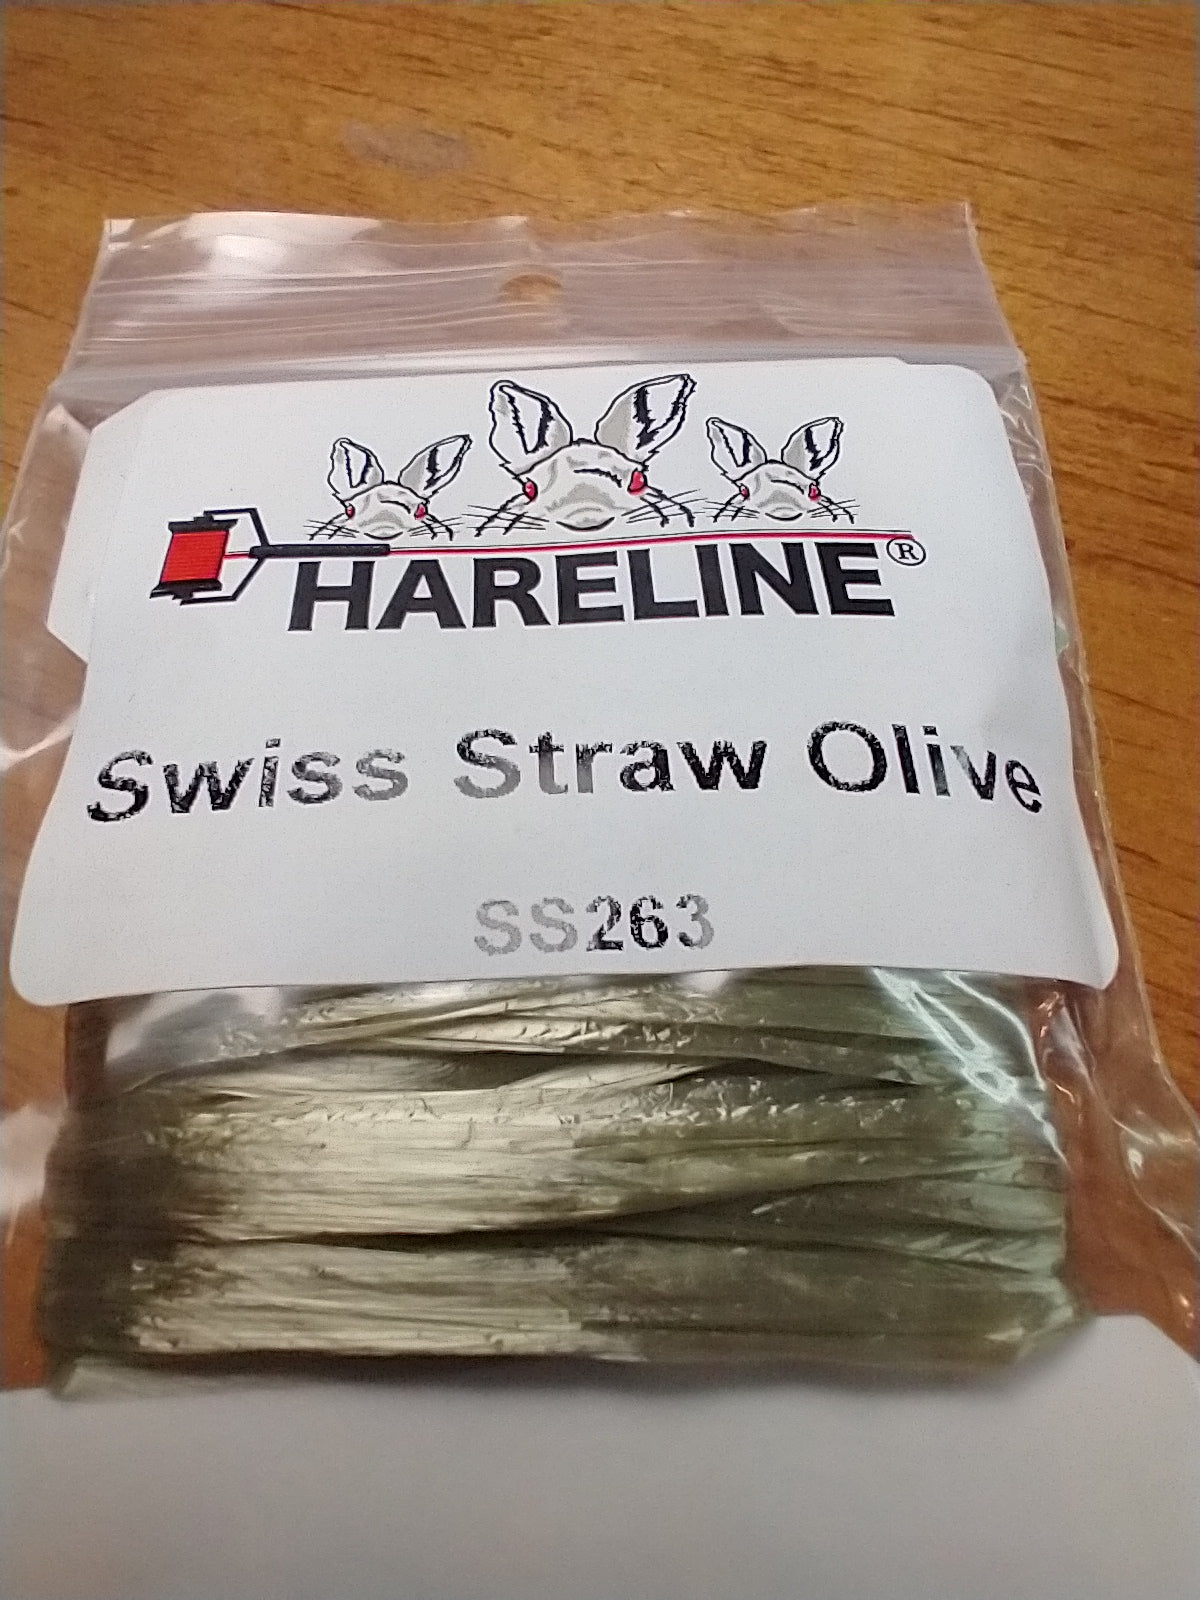 Swiss Straw